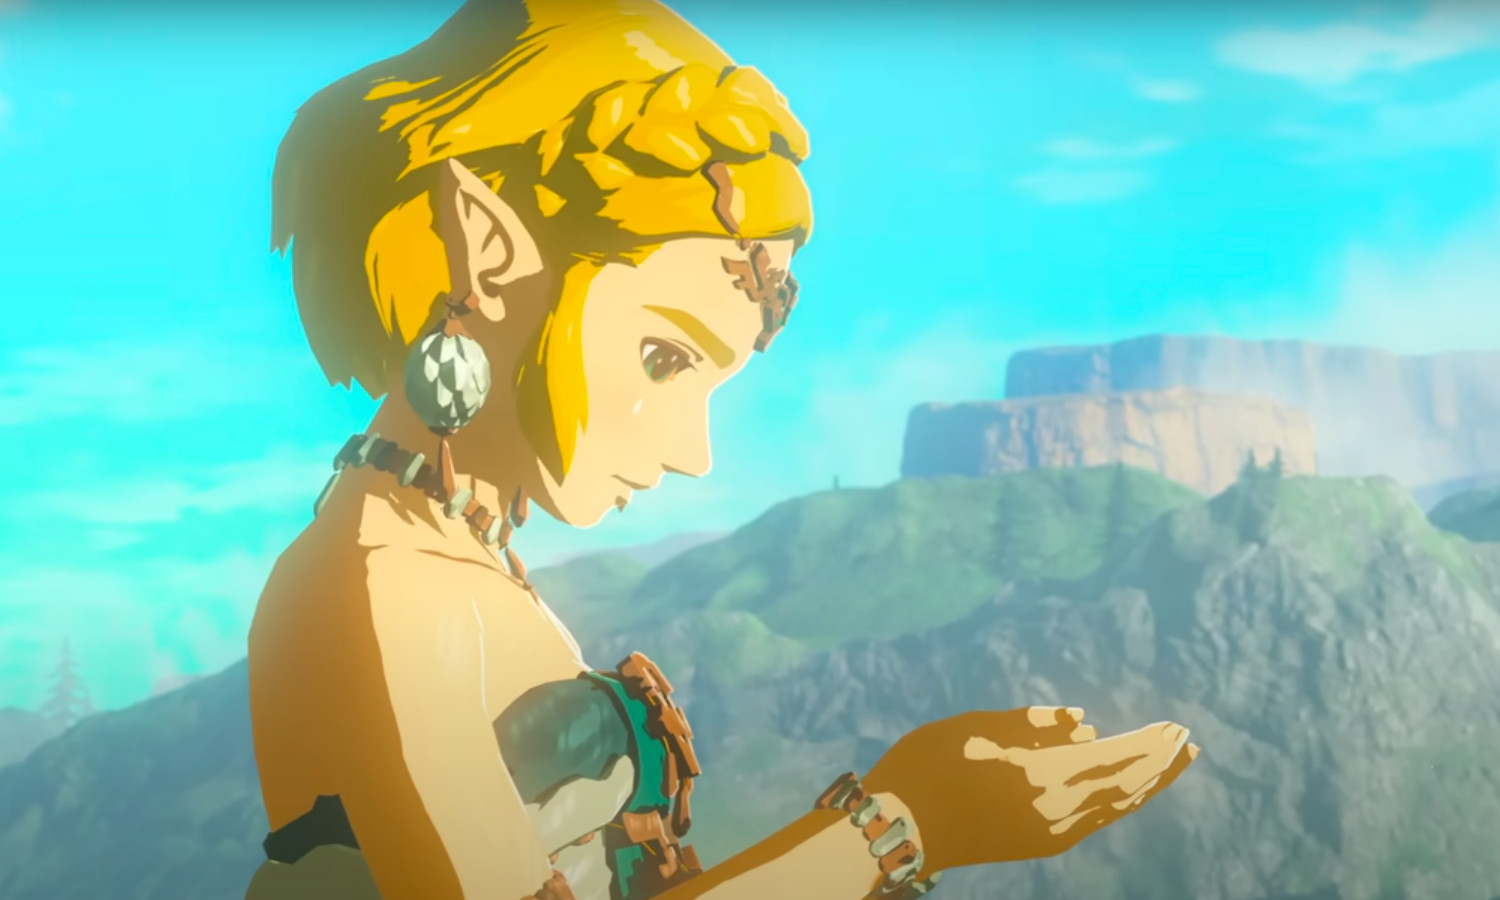 Le 3ème trailer de Zelda Tears of the kingdom déchire ! On connaît enfin le boss du jeux. Tous les fans acclament sont retour!!